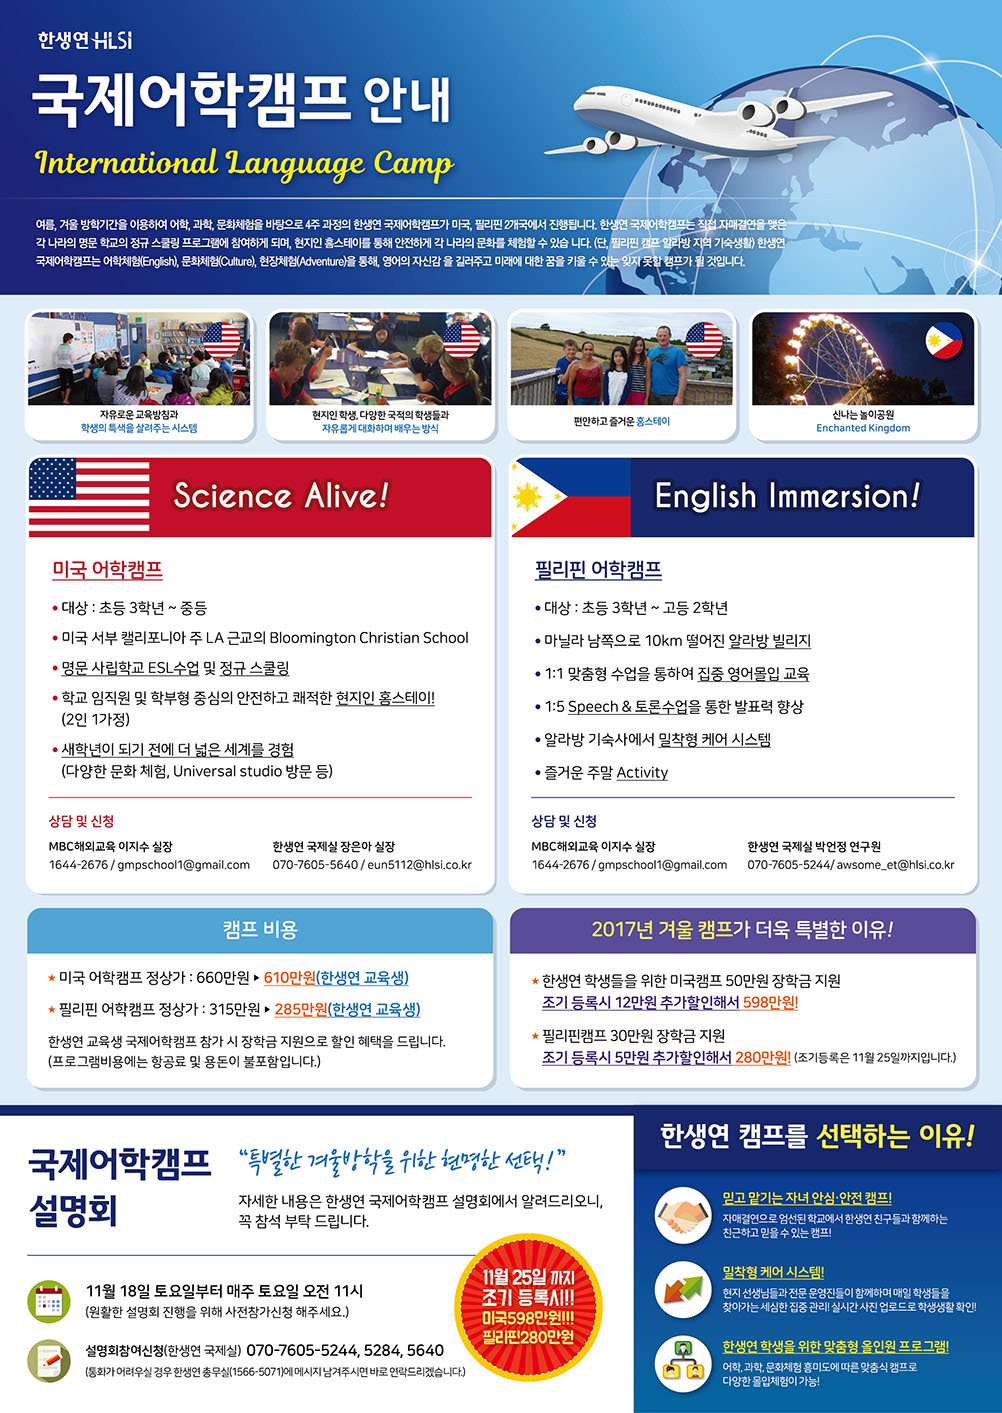 국제_어학겨울캠프_18년-01_1.jpg